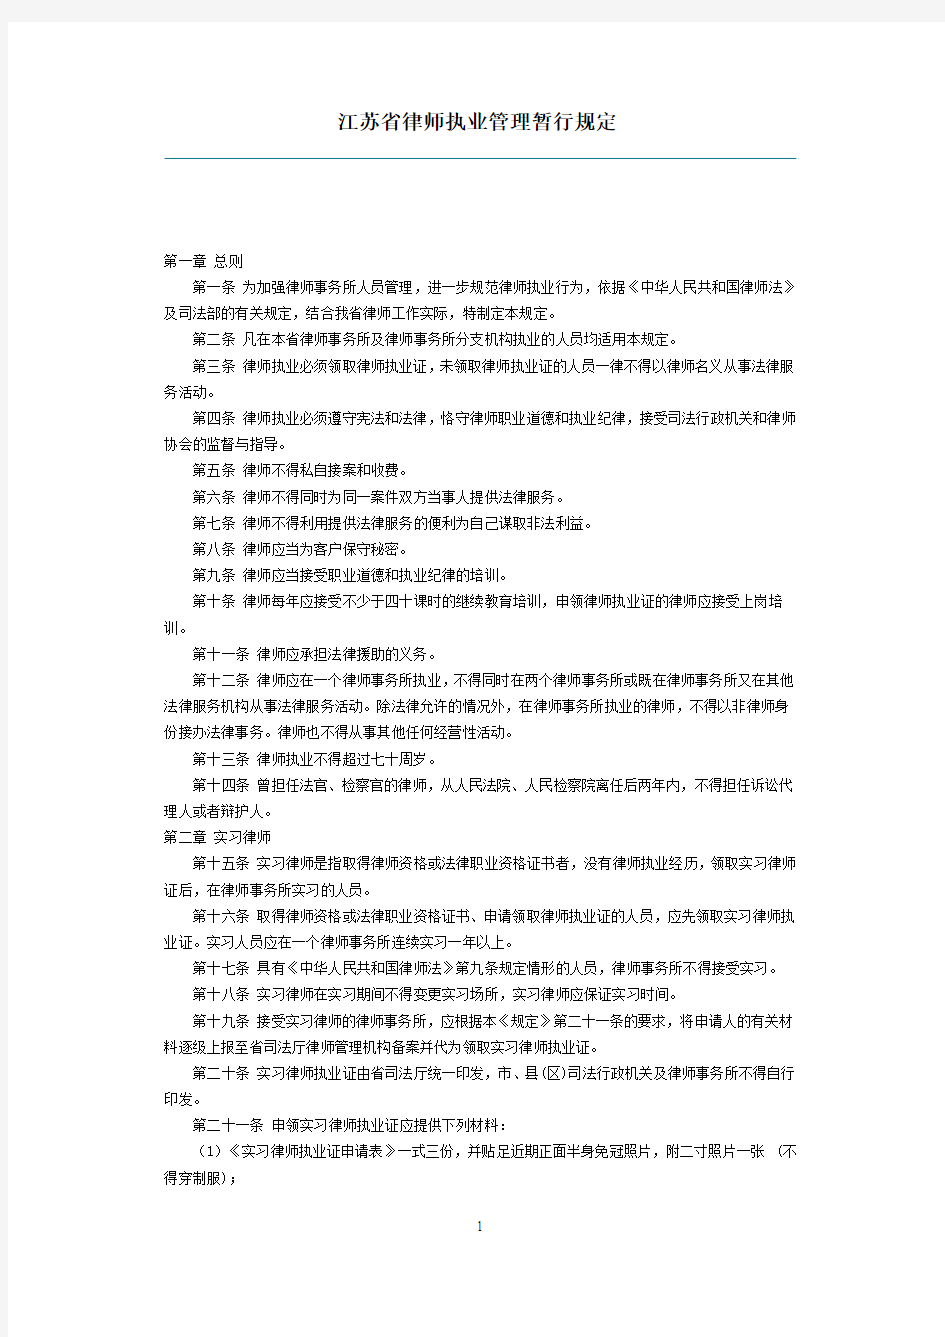 江苏省律师执业管理暂行规定